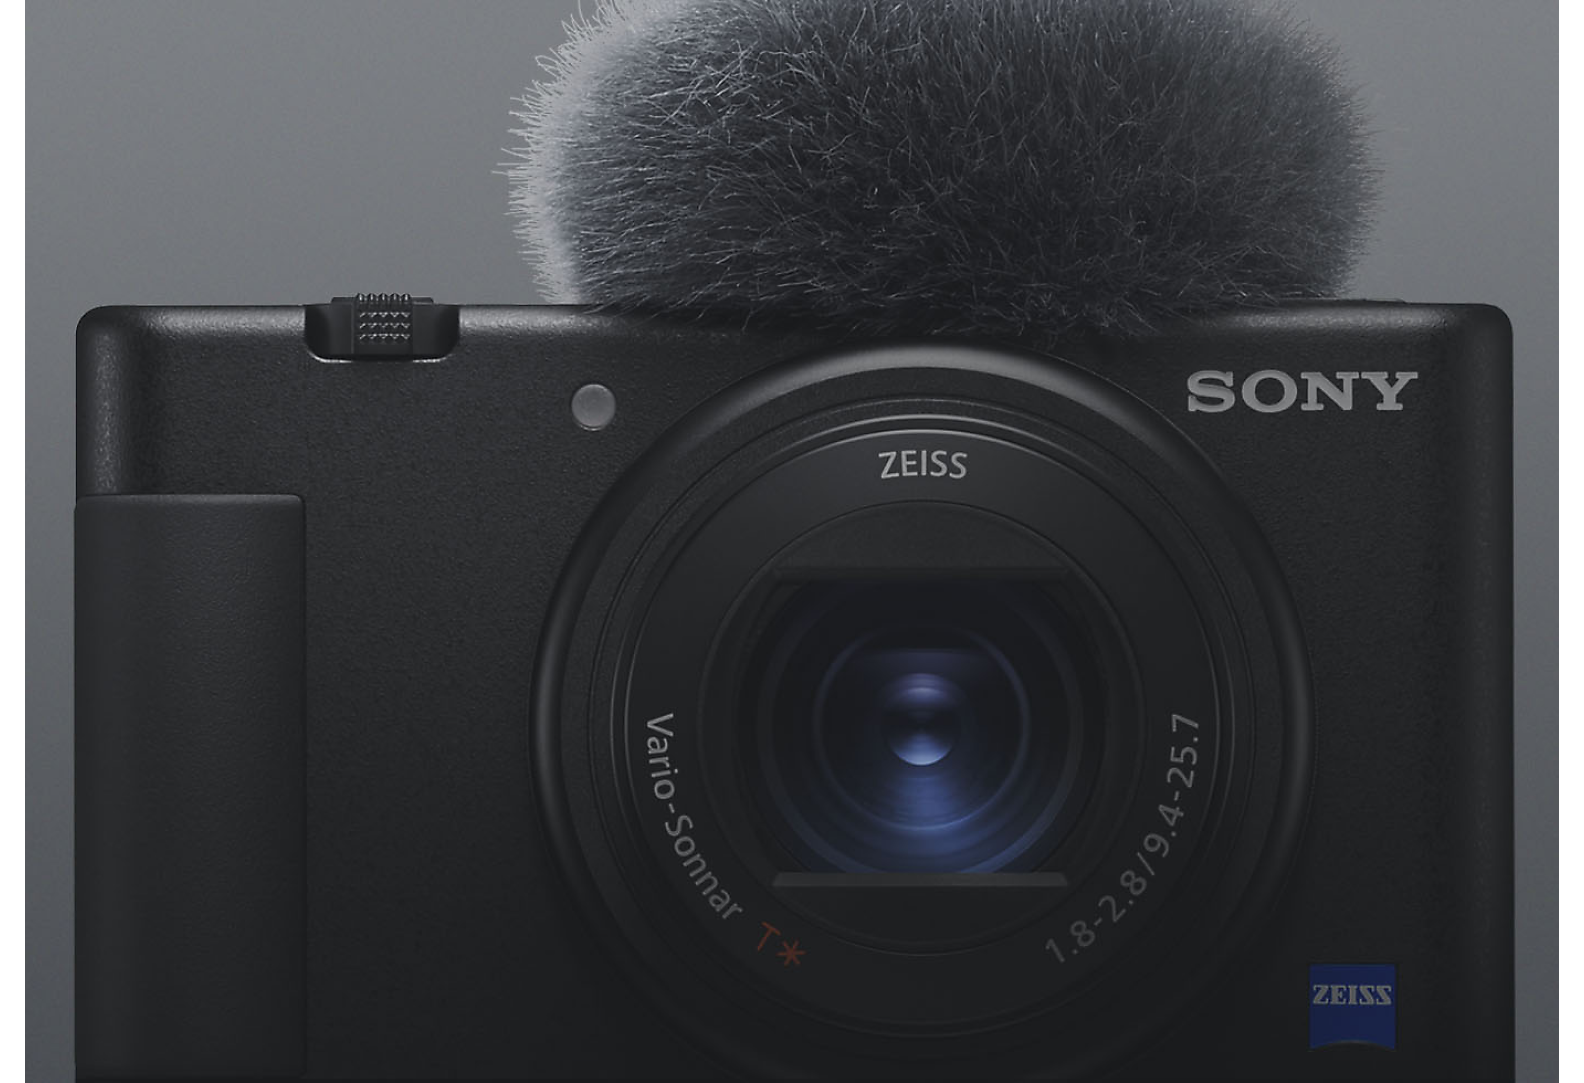 Fekete Sony kompakt fényképezőgép elölnézetből, csatlakoztatott mikrofonnal